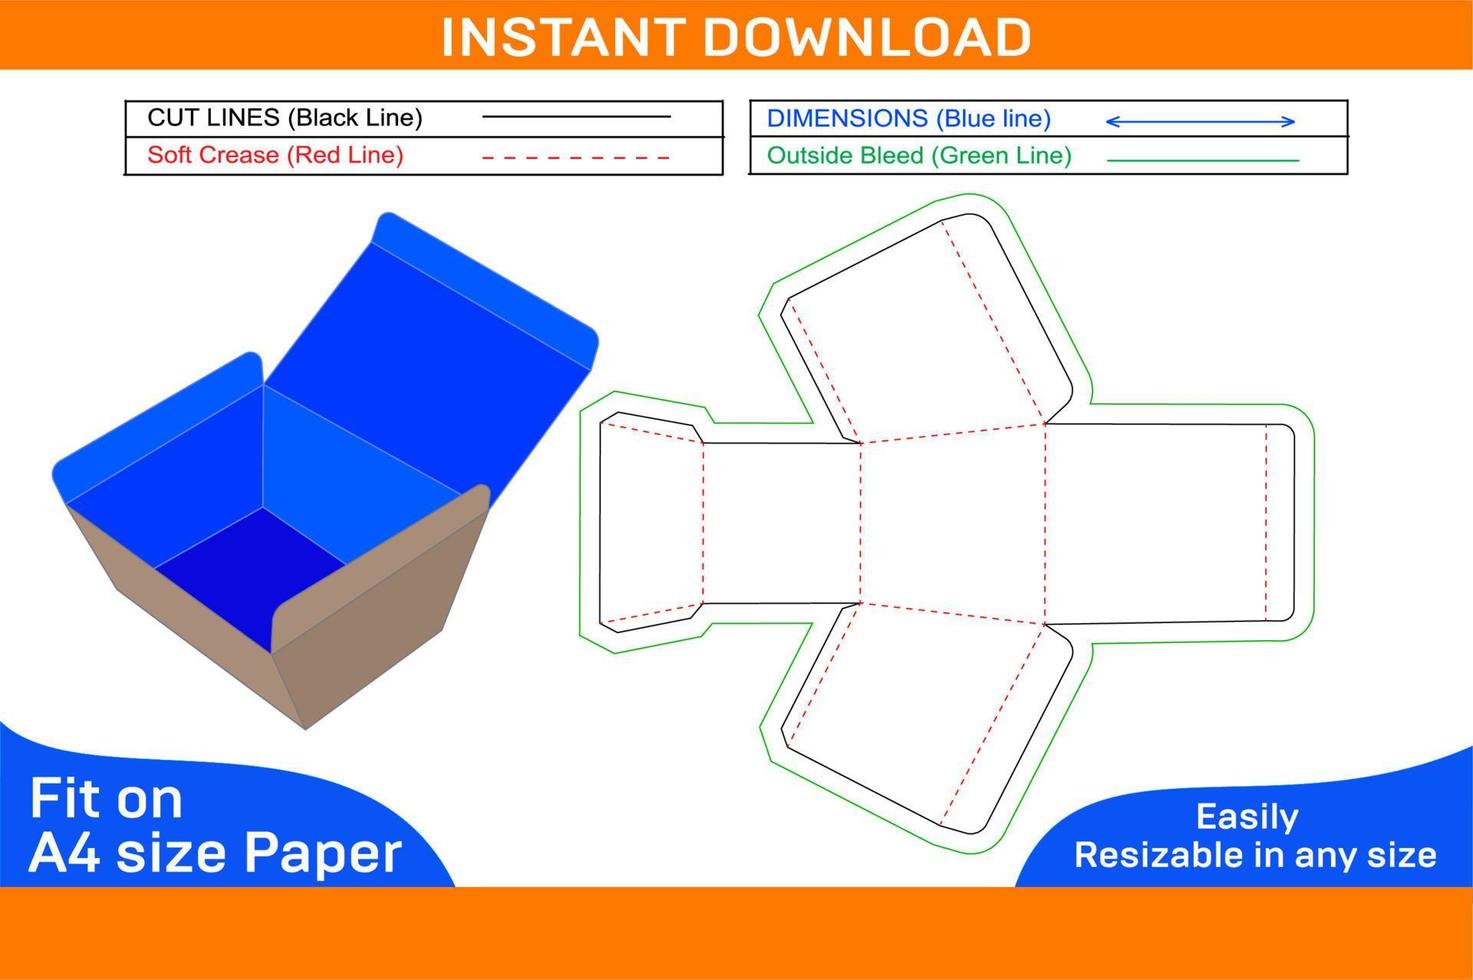 tiffin låda eller papper lunch låda, mat låda Död linje tamplate och 3d låda design låda Död linje vektor